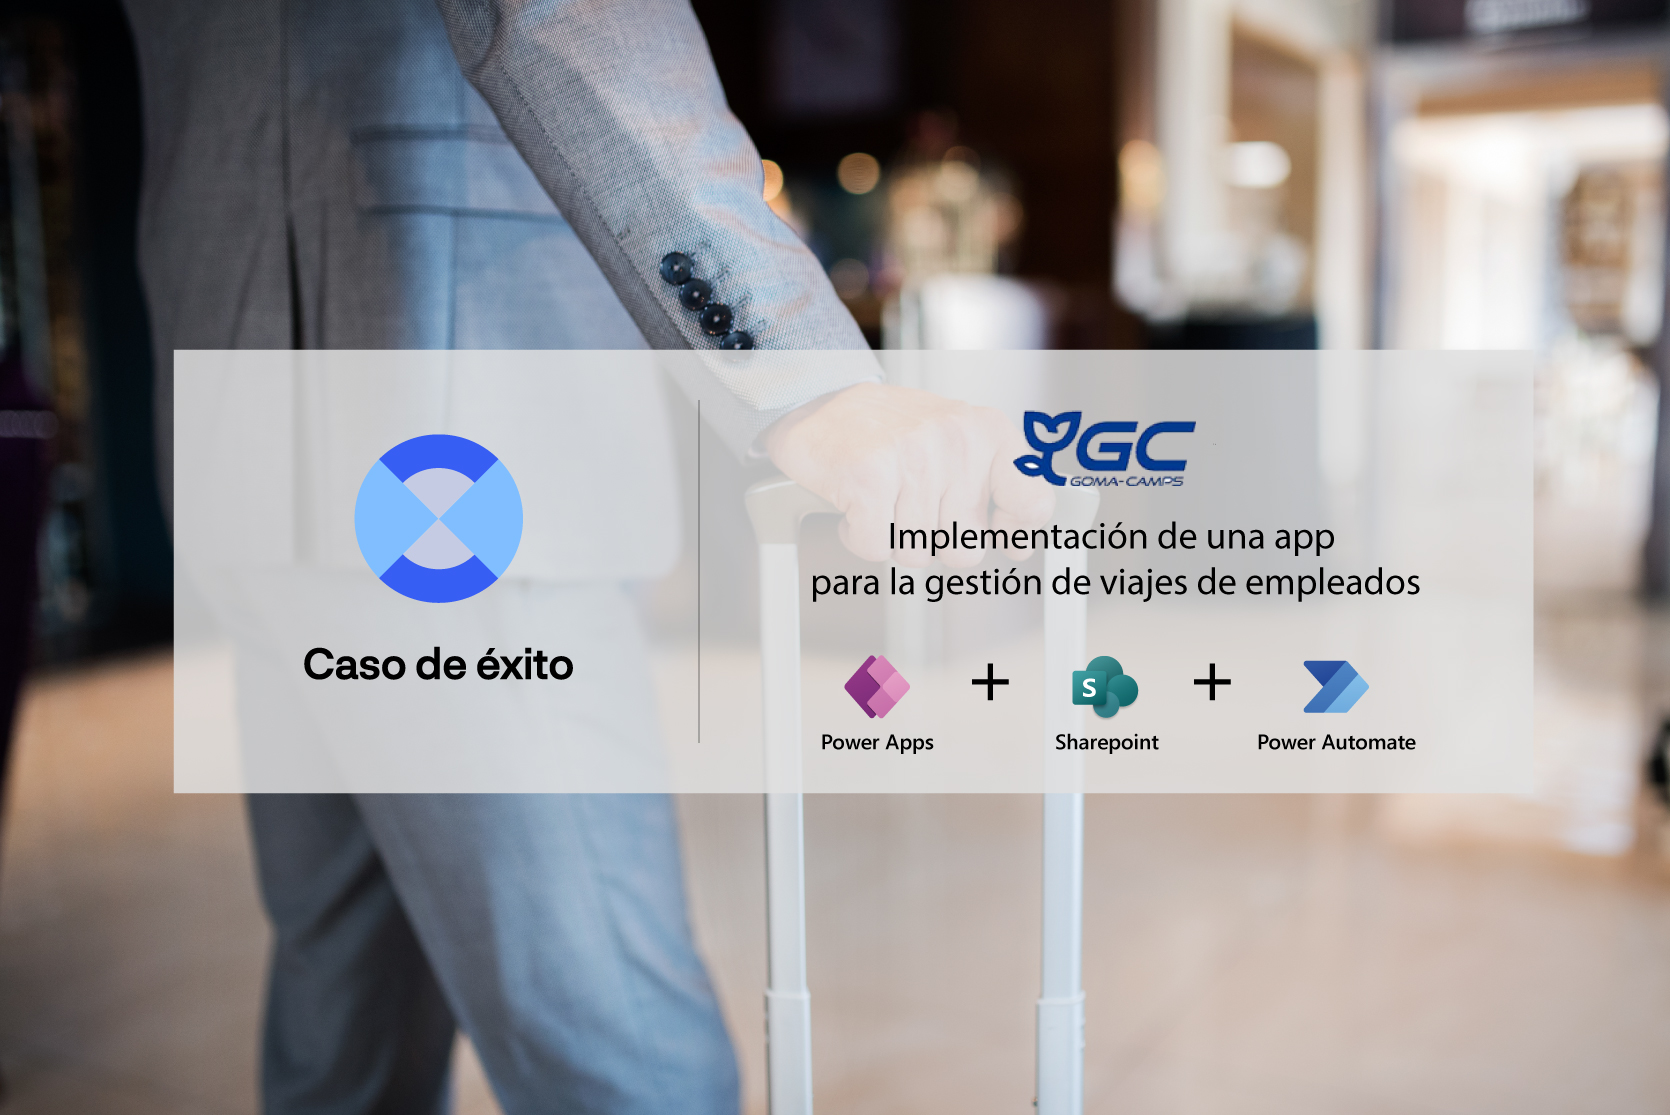 Caso de éxito: app de Gomà Camps para la gestión de viajes de empleados, con Power Apps, Sharepoint y Power Automate